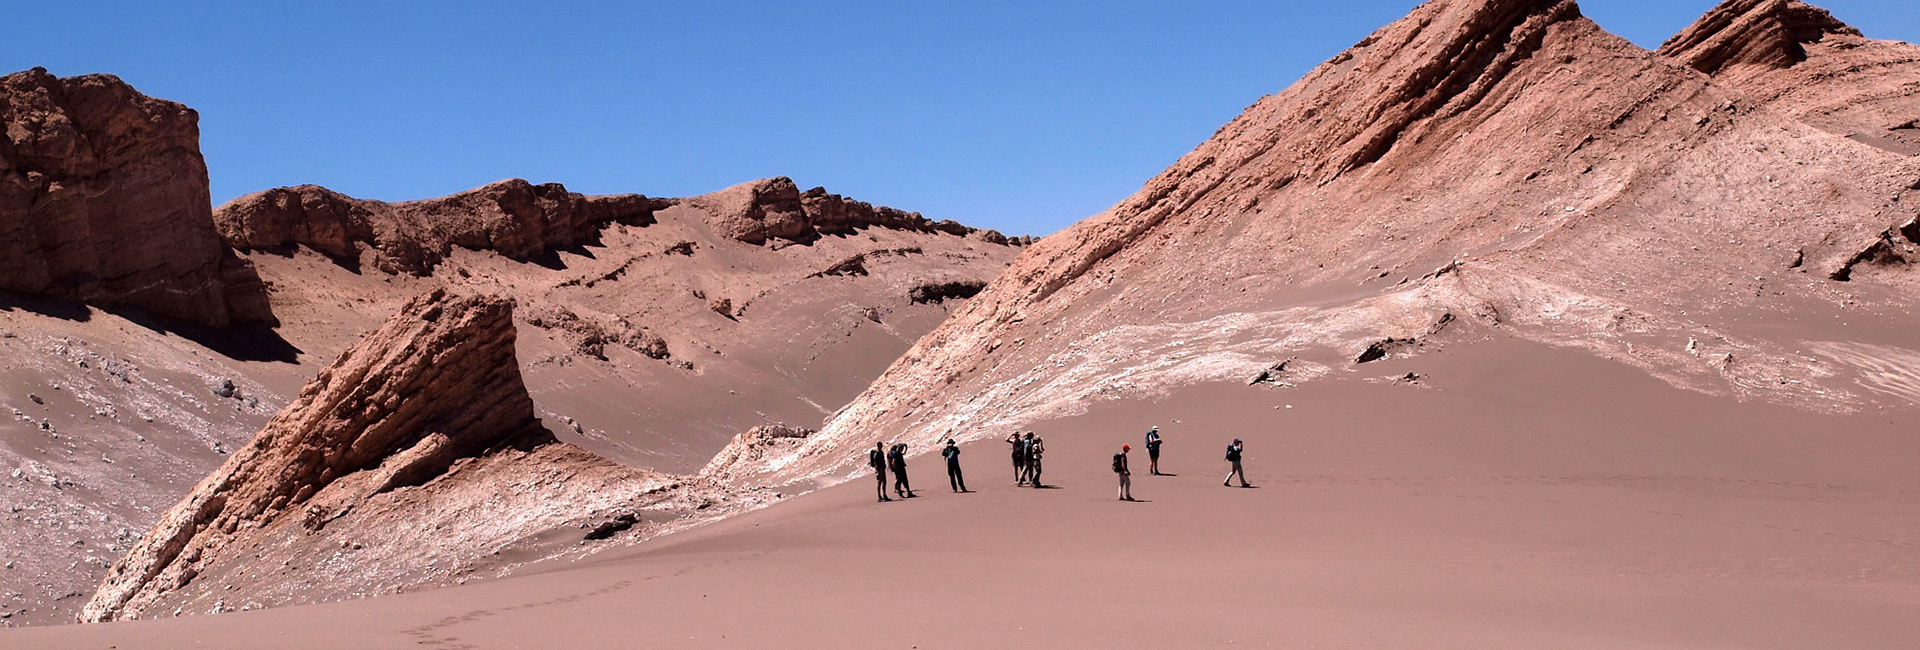 Valle de la Luna Hike in the Atacama Desert